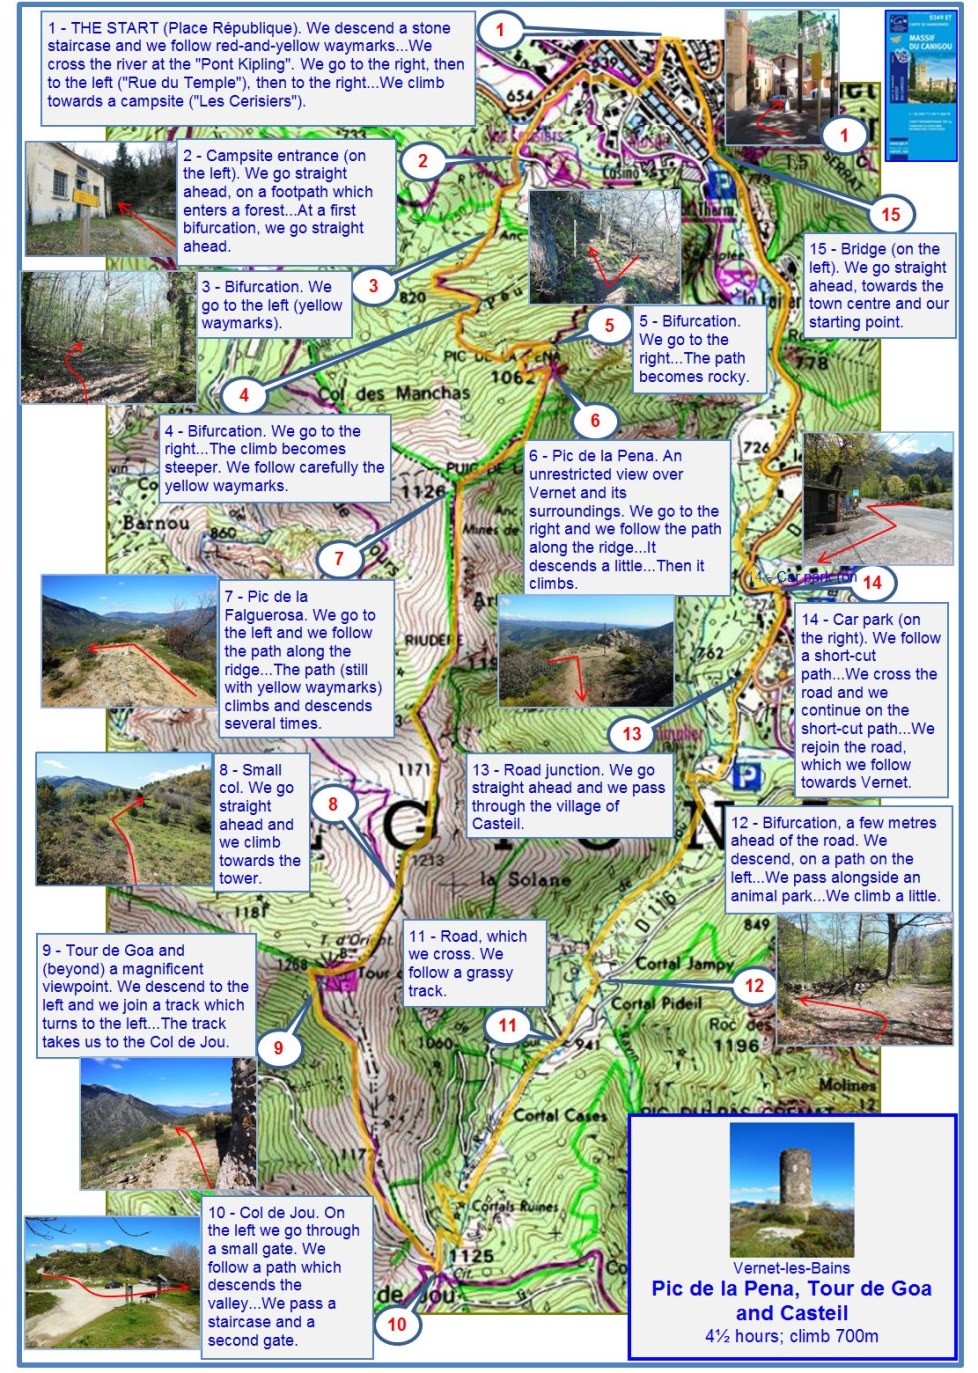 The Tour de Goa (description) map